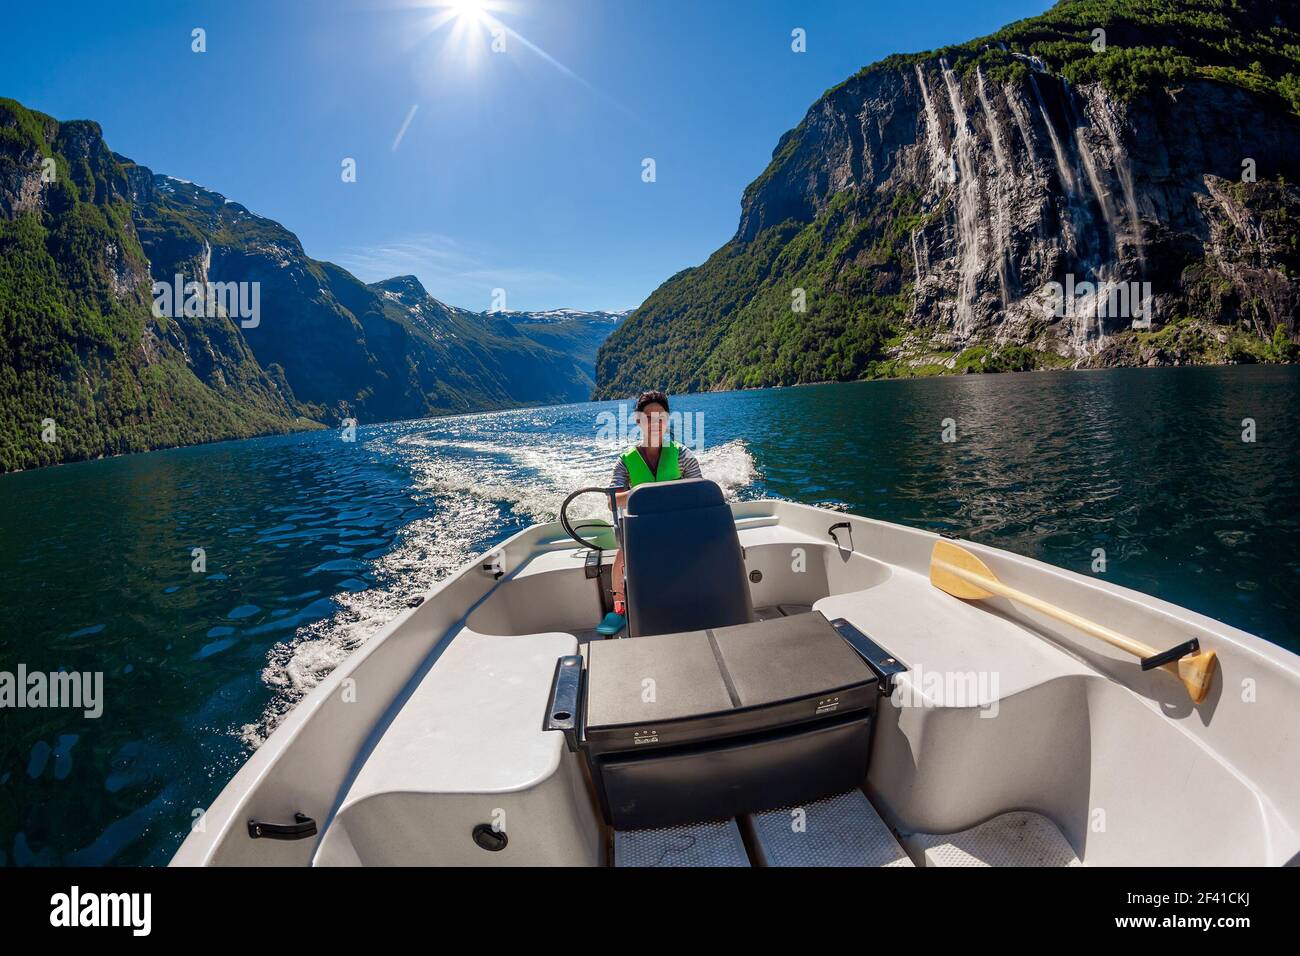 Femme conduisant un bateau à moteur sept Sœurs cascade sur le fond. Fjord Geiranger, belle nature Norvège. Le fjord Geiranger, site classé au patrimoine mondial de l'UNESCO Banque D'Images